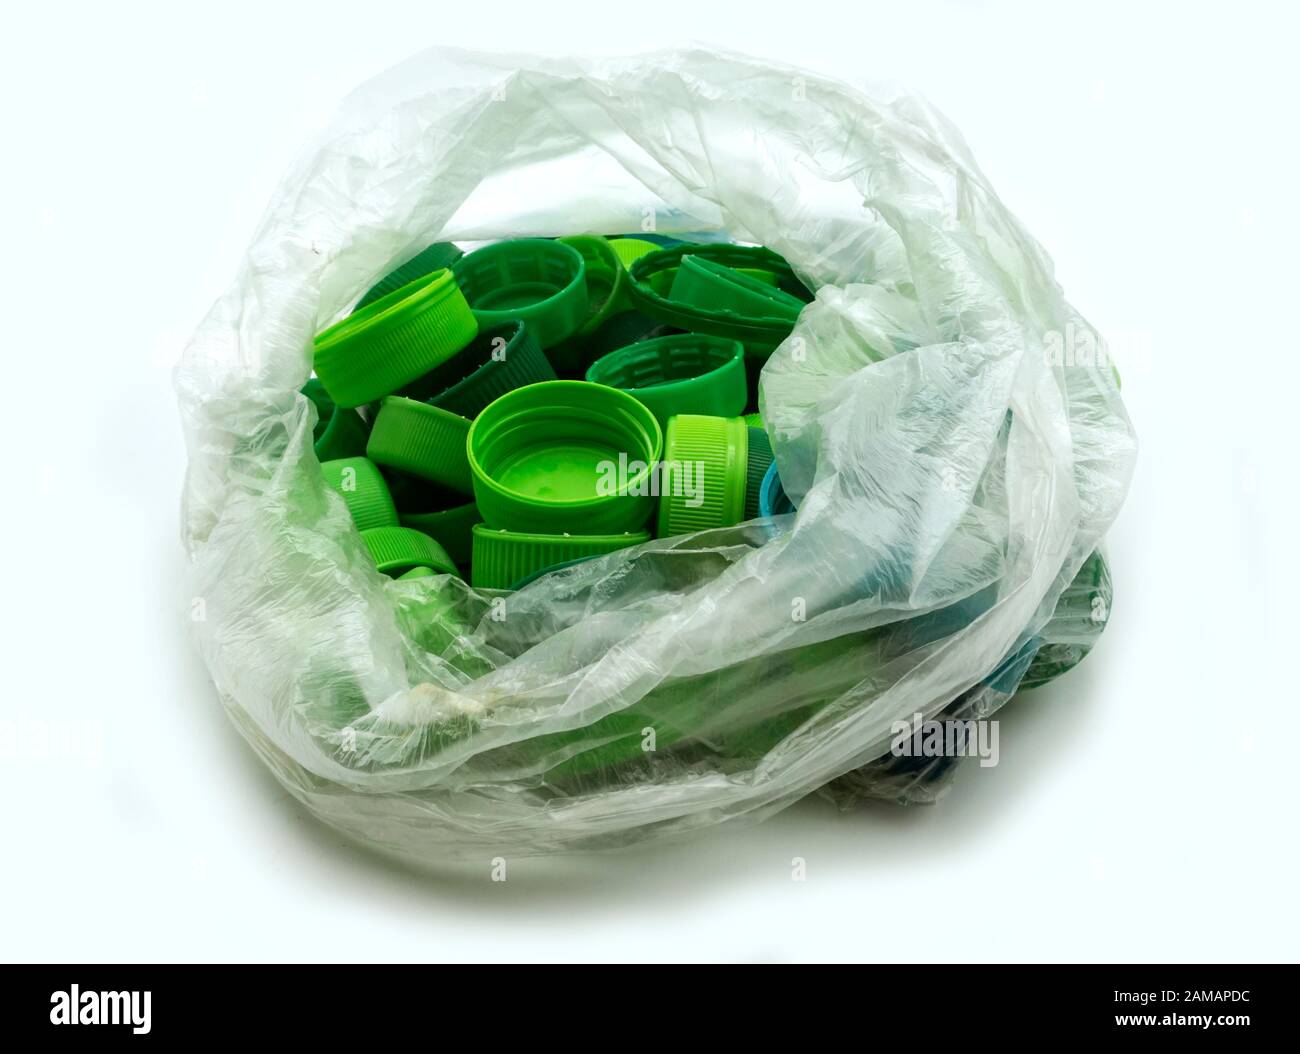 Grüne Kunststoff-Flaschenverschlüsse nach Farben sortiert in transparenten Einmal-Plastiktüten. PP eine PET-Verschmutzung. Recycling-Lösungen für Kunststoffabfälle. Stockfoto